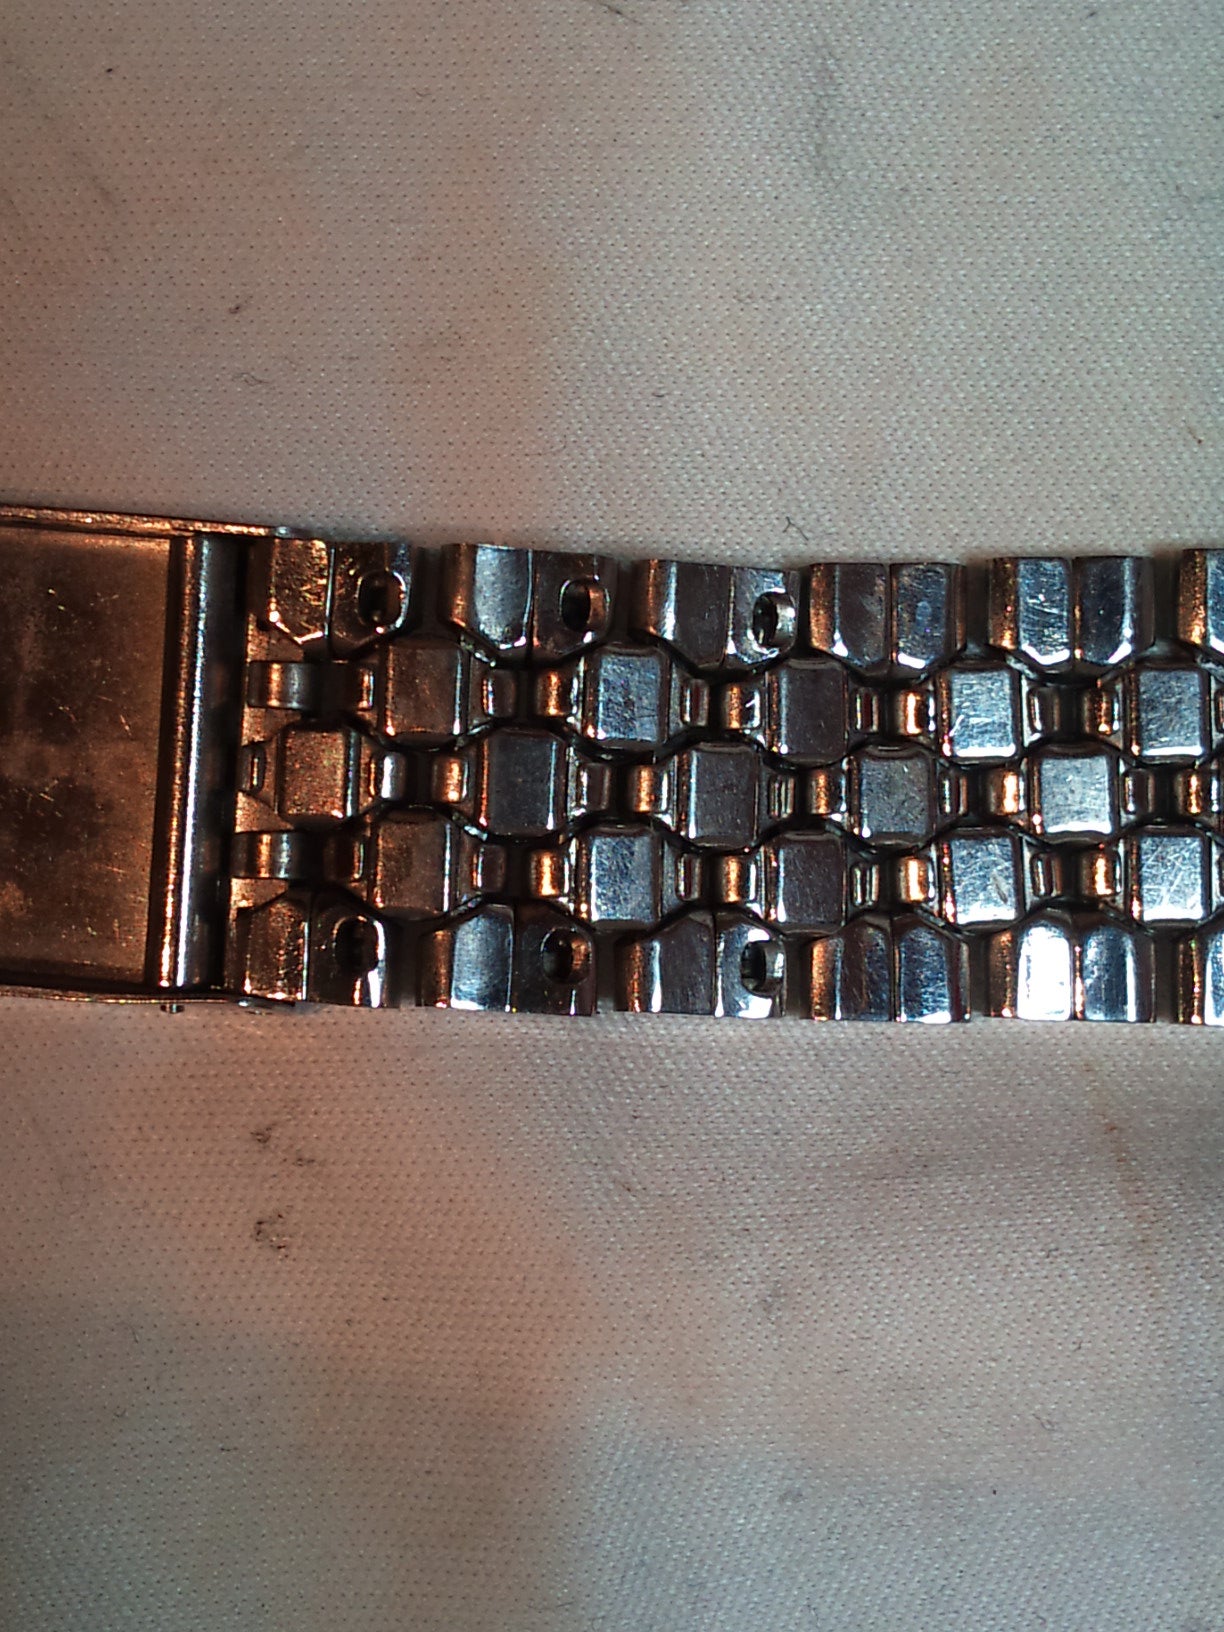 Seiko 'Mini-Coffin'/'Diamond-link' bracelet - how to resize? | The Watch  Site